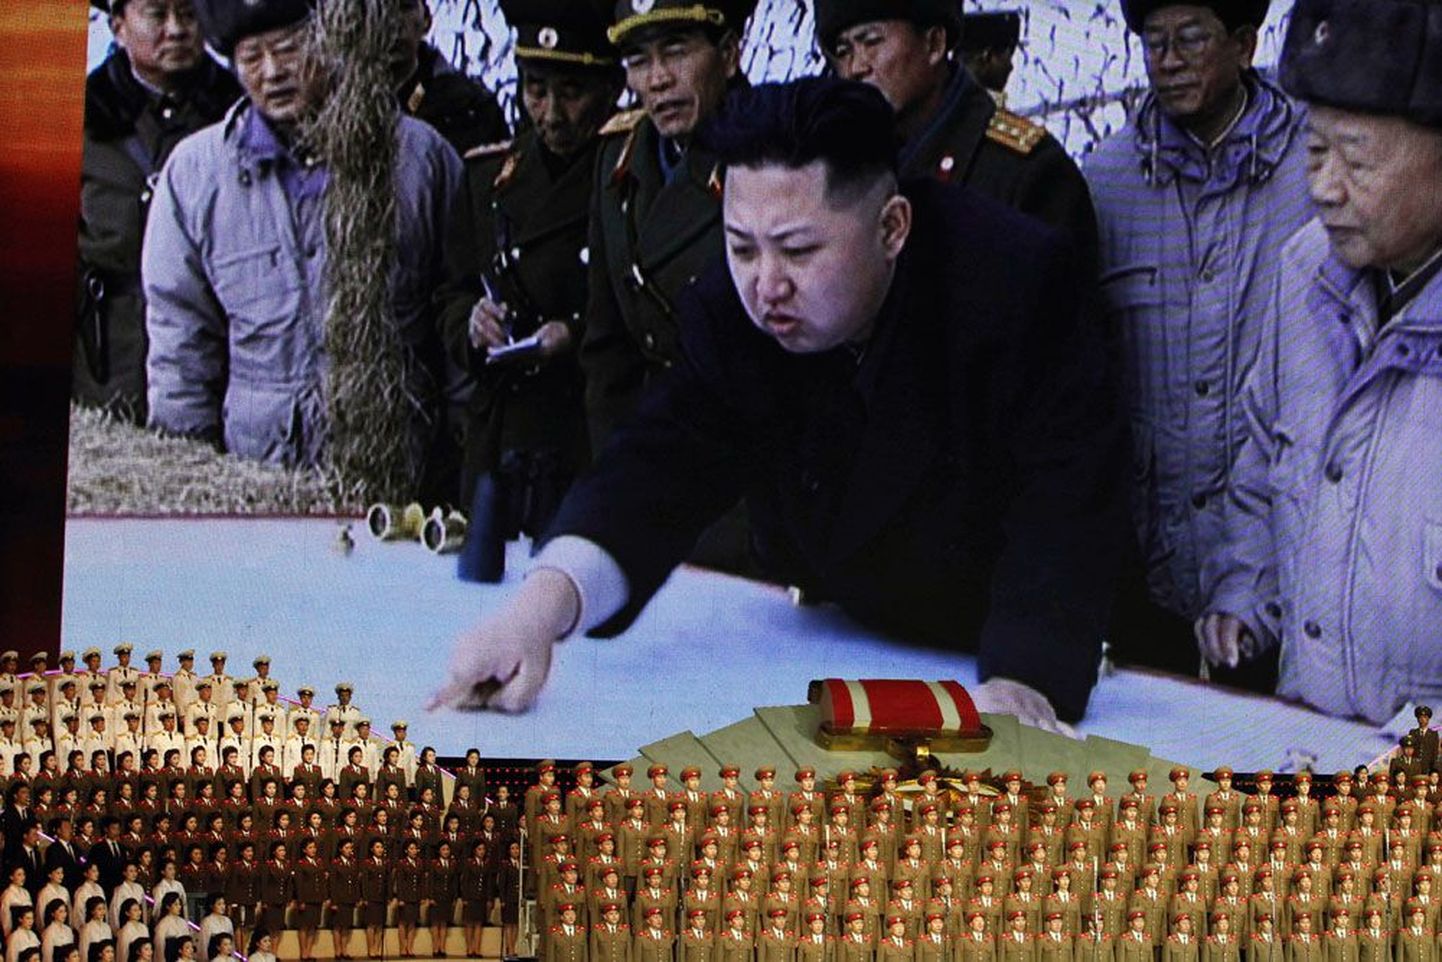 Põhja-Korea juht Kim Jong-un hiiglaslikul videoekraanil aprillis Pyongyangis toimunud kontserdil. Politoloog Byungki Kimi hinnangul on noorest Kimist saanud teoreetiline ja tseremoniaalne riigipea – tegelik võim käib läbi tema tädi, tädimehe ja armee.